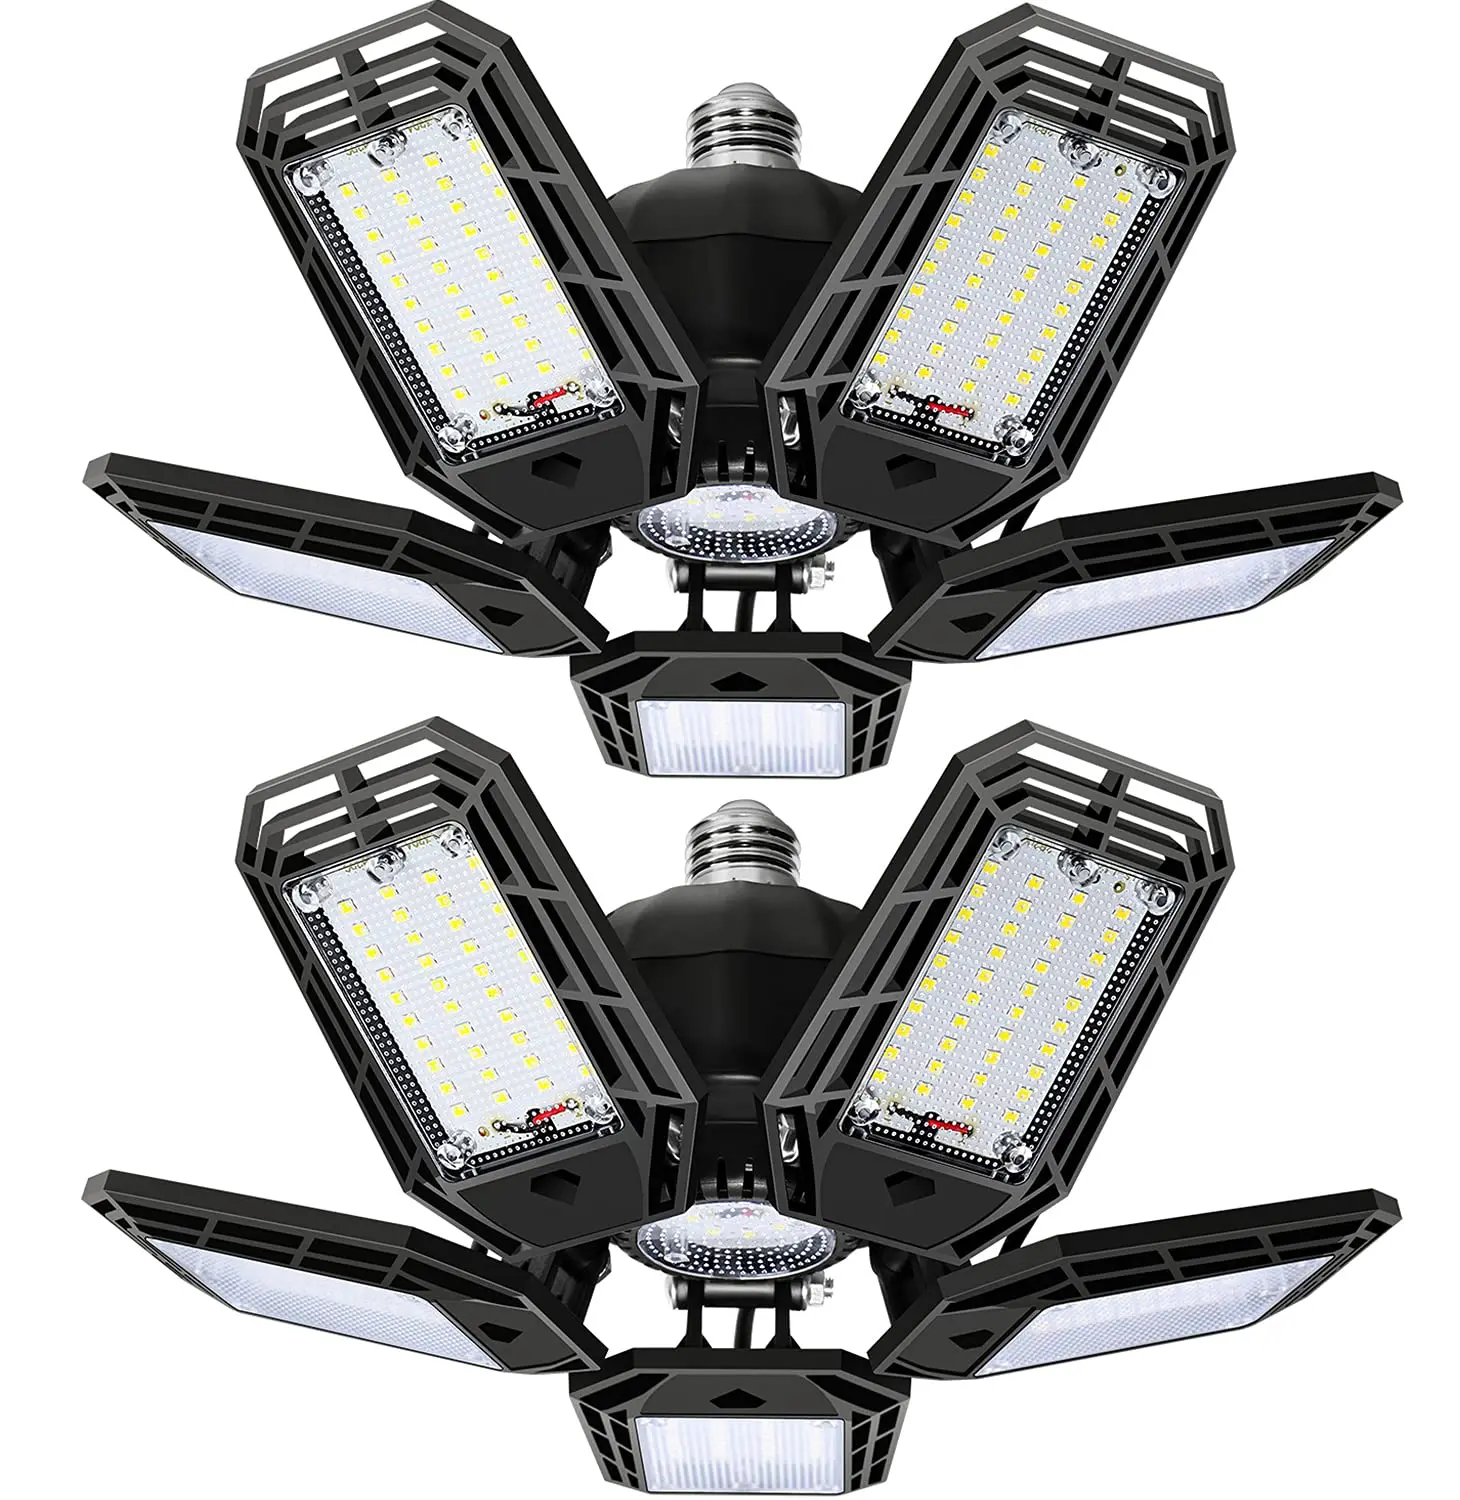 LED Garage Lights with 5 Adjustable Panels